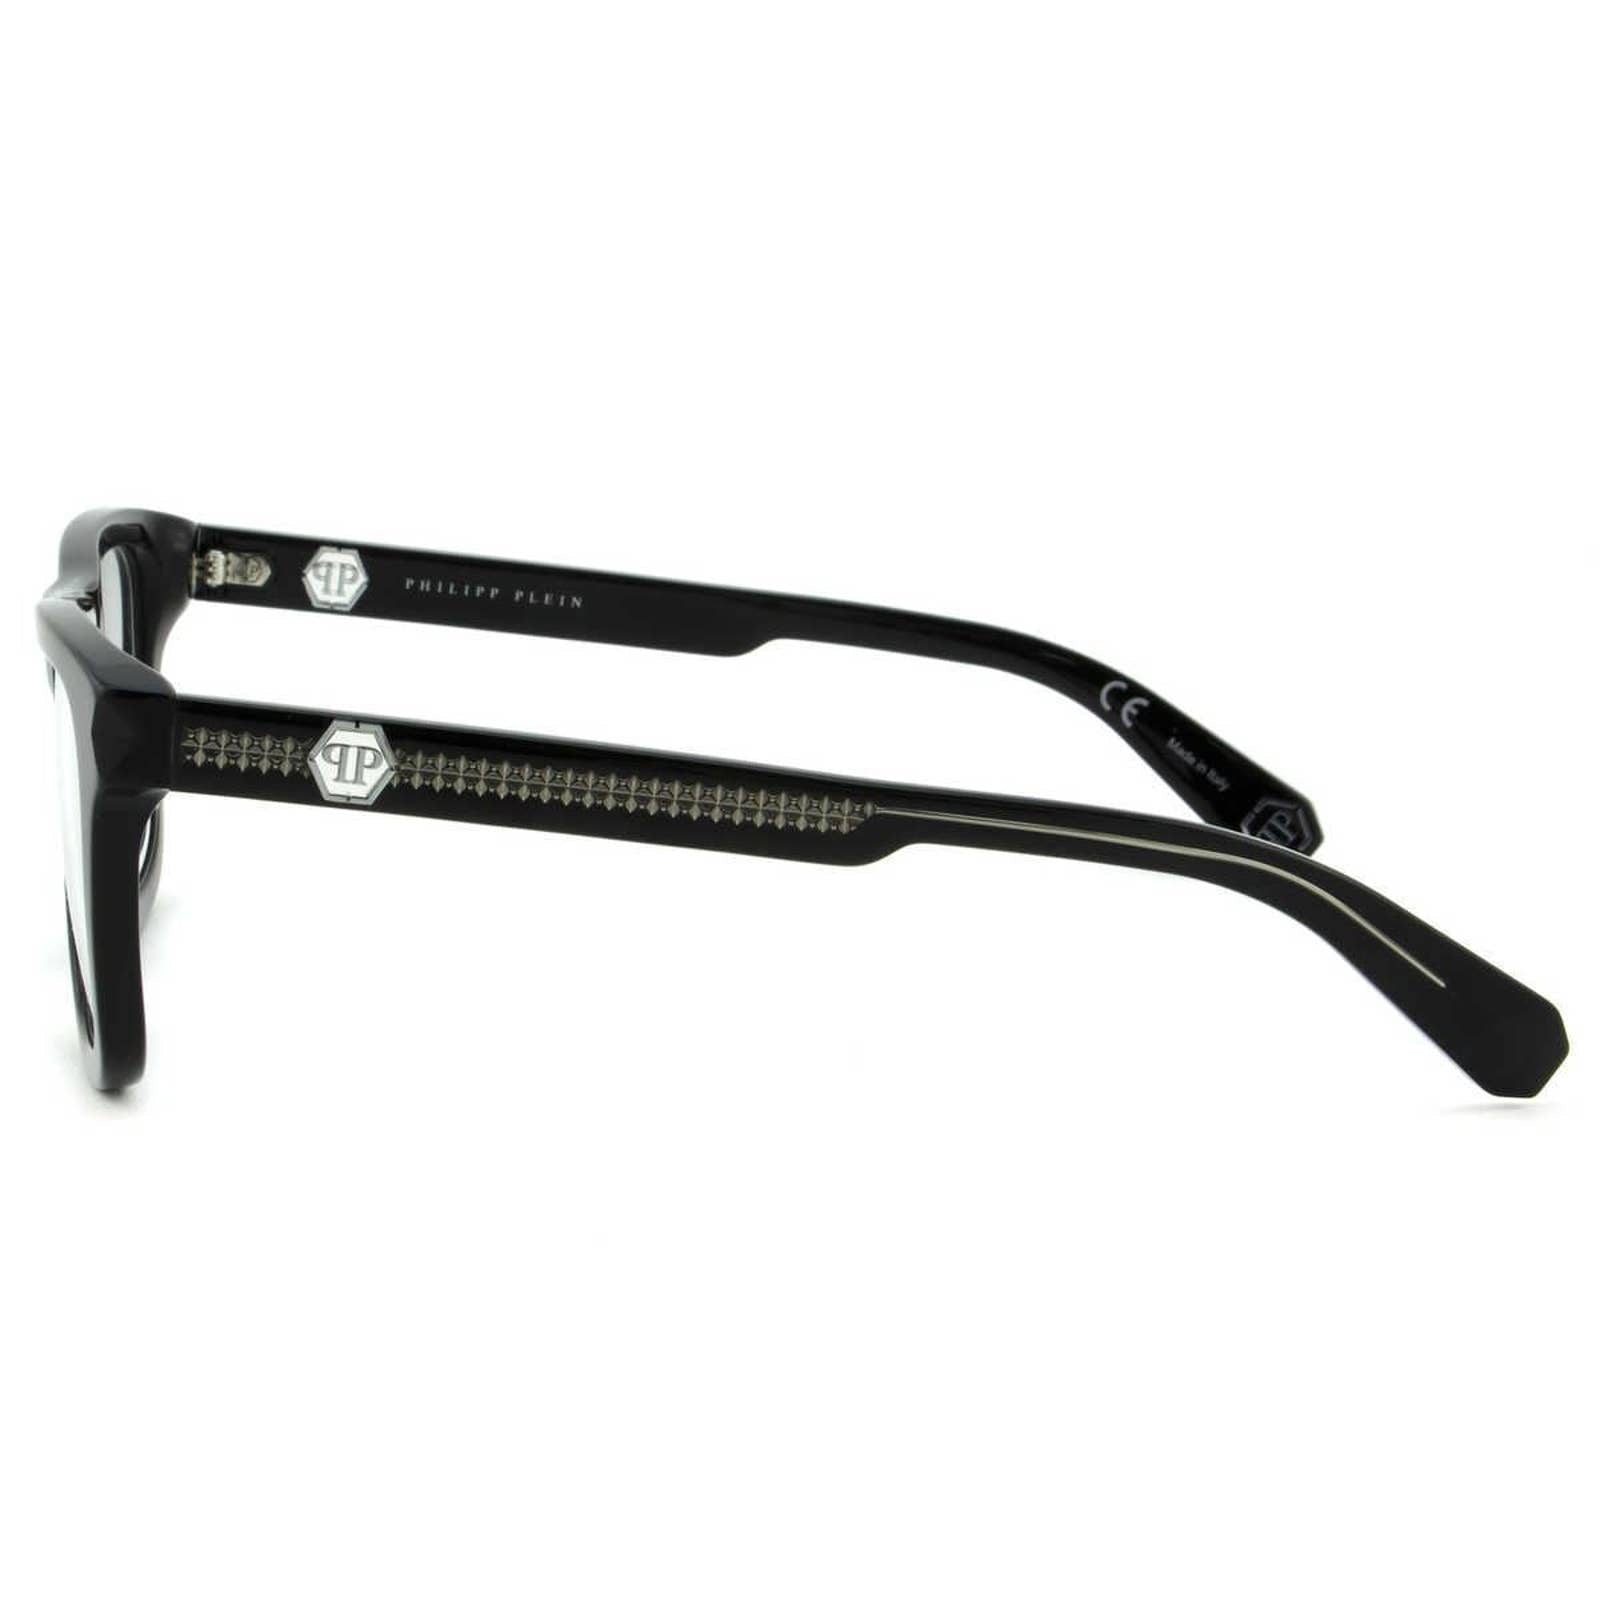 Men Optical Eyeglasses Square VPP023V-0700 Black Frame